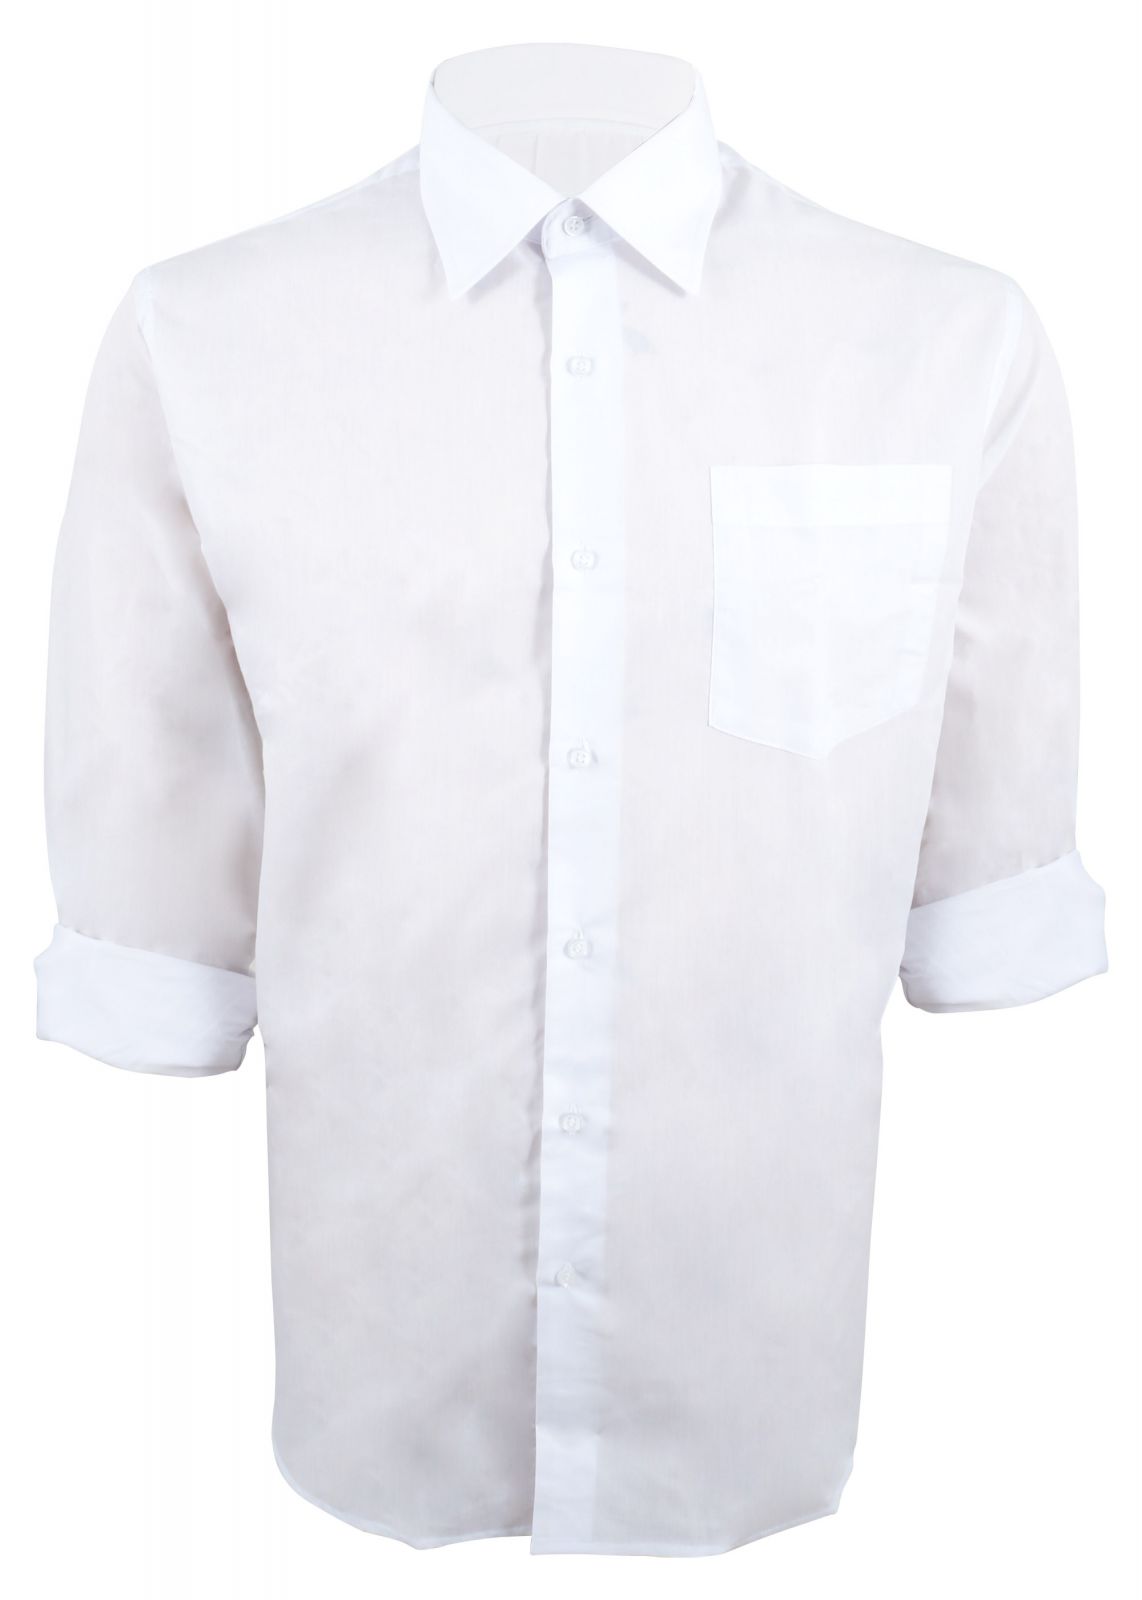 Ανδρικό πουκάμισο μακρύ μανίκι & τσεπάκι. Οversize Collection ΛΕΥΚΟ